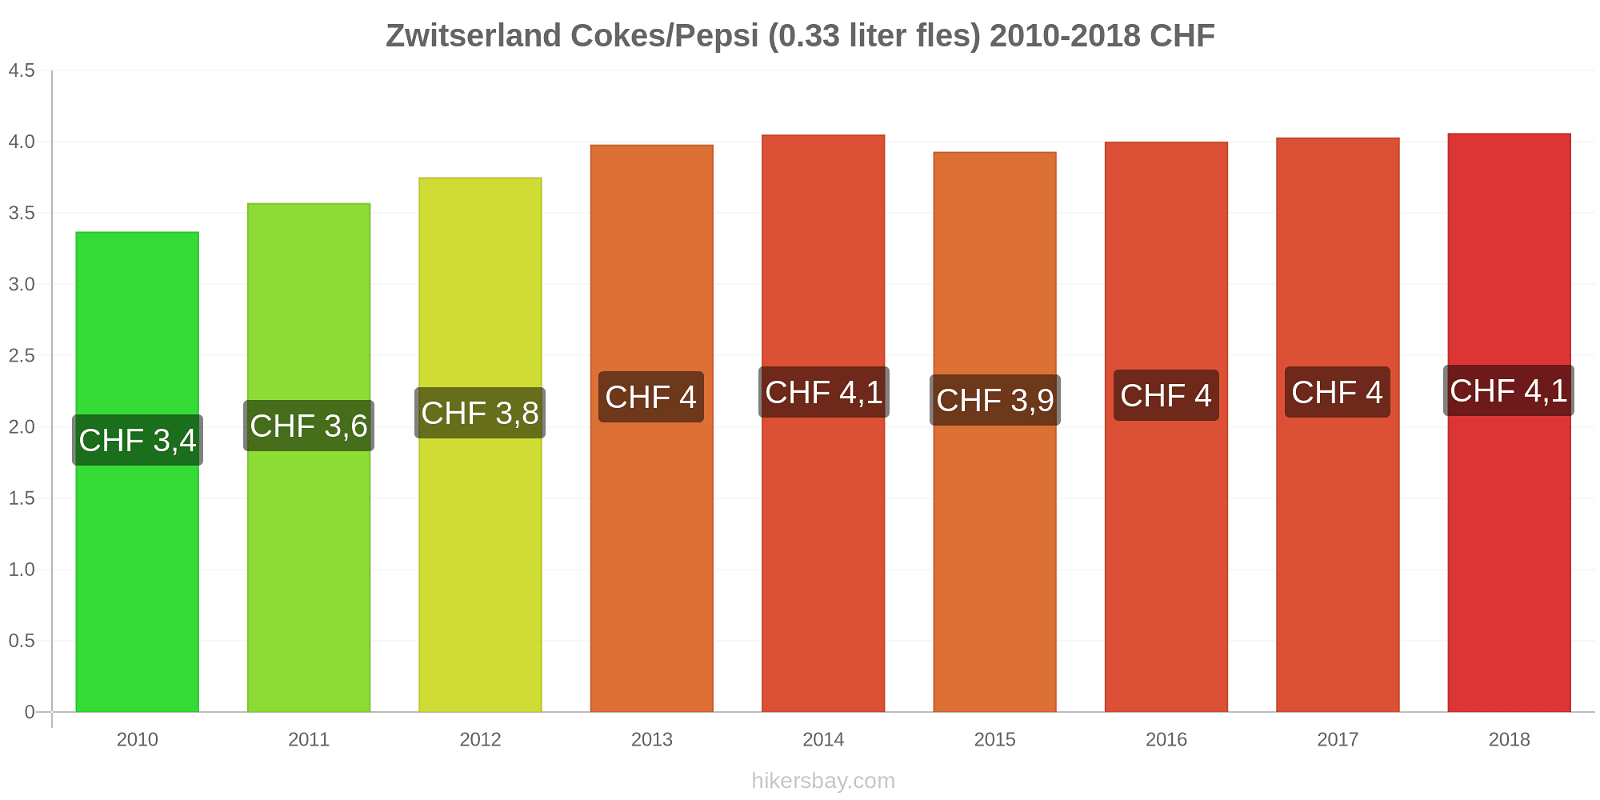 Zwitserland prijswijzigingen Cokes/Pepsi (0,33 literfles) hikersbay.com